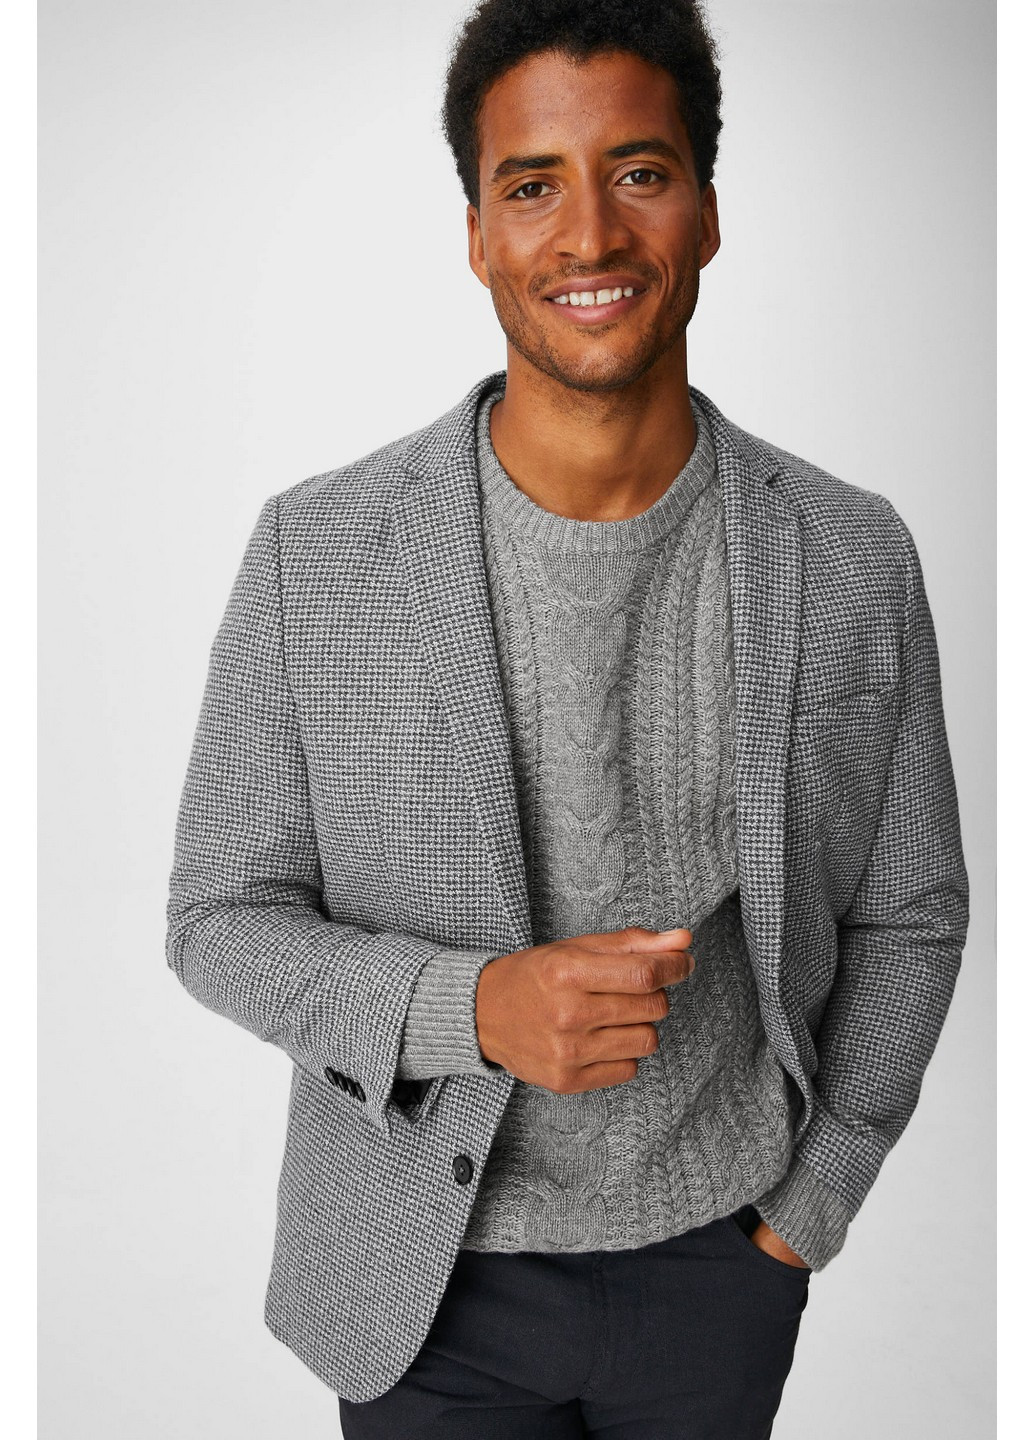 Пиджак C&A полоска светло-серый деловой полиэстер